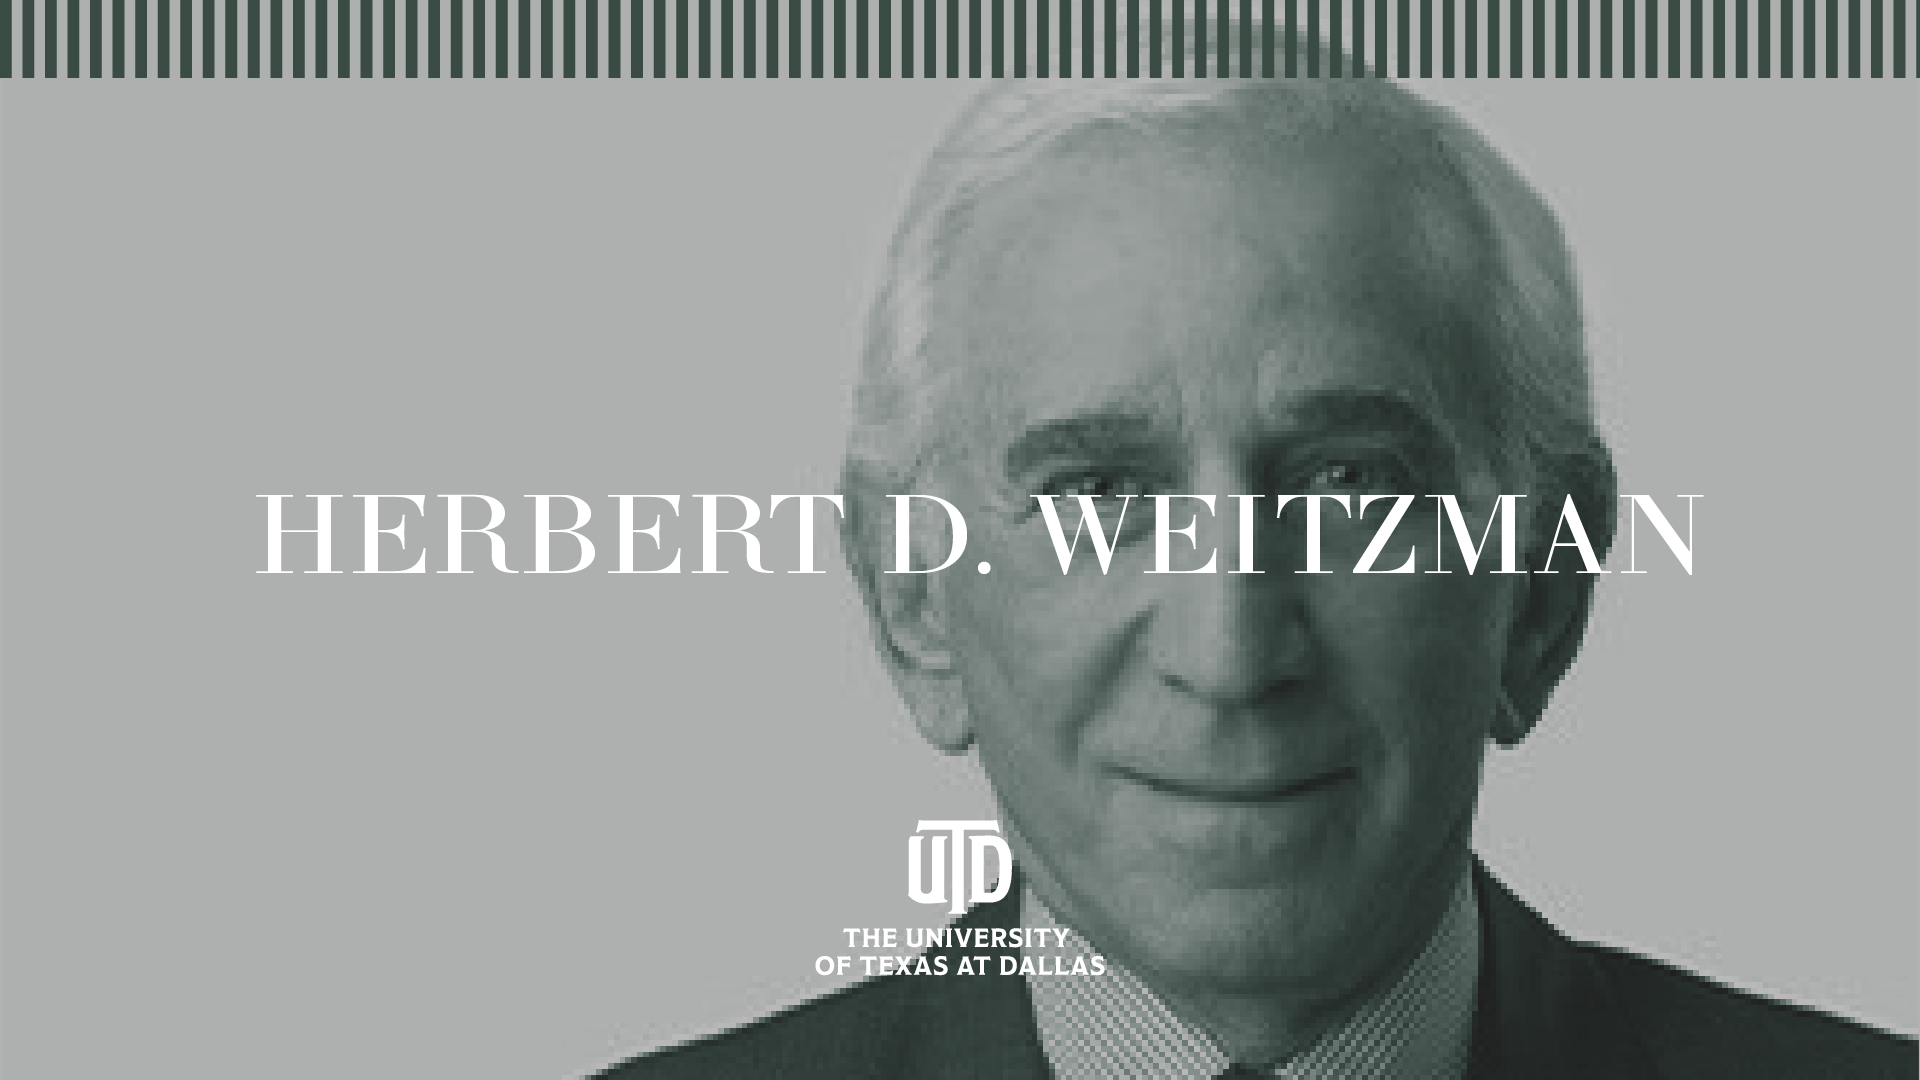 Portrait of Herbert D. Weitzman